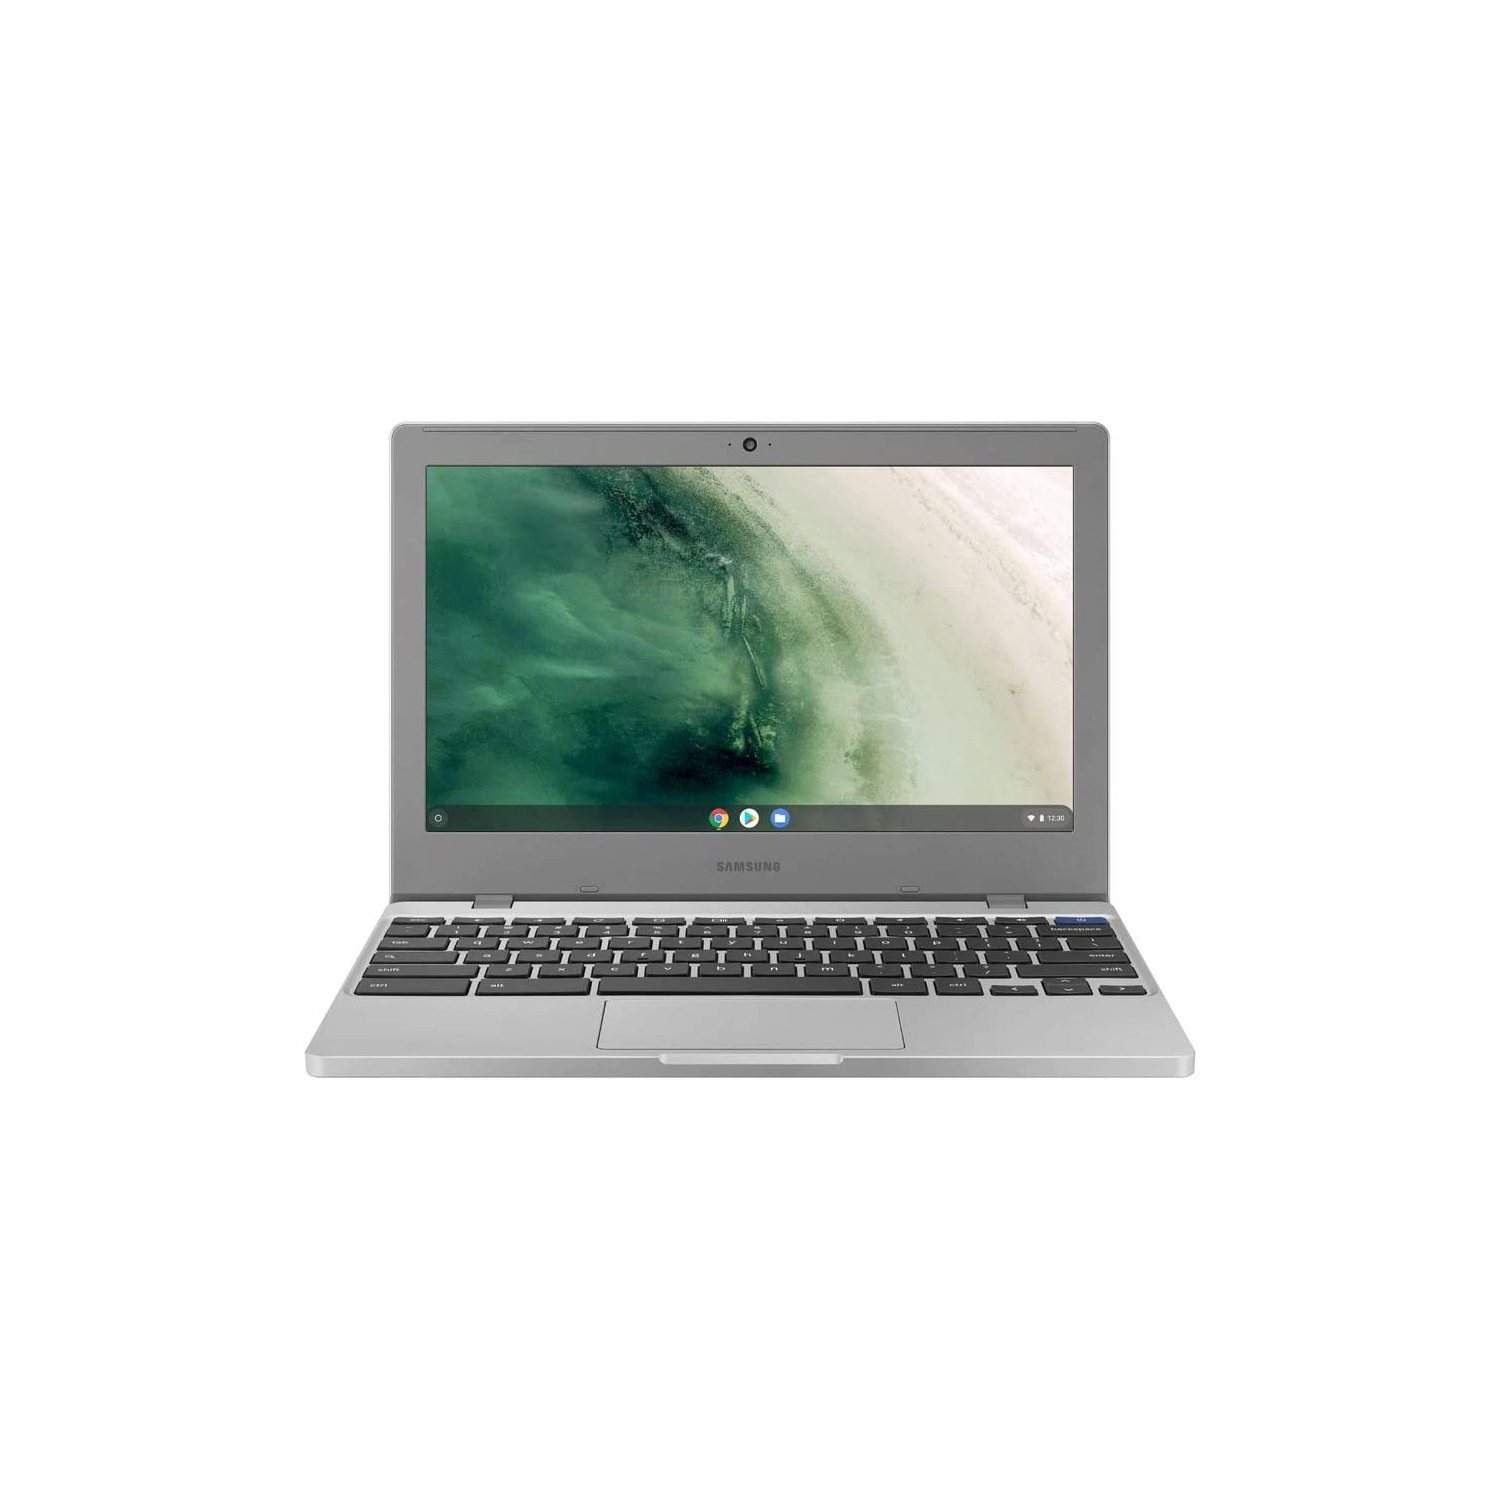 Refurbished (Excellent) - Samsung Chromebook 4 Chrome OS 11.6 inch HD Intel Celeron Processor N4000 4GB RAM 32GB eMMC